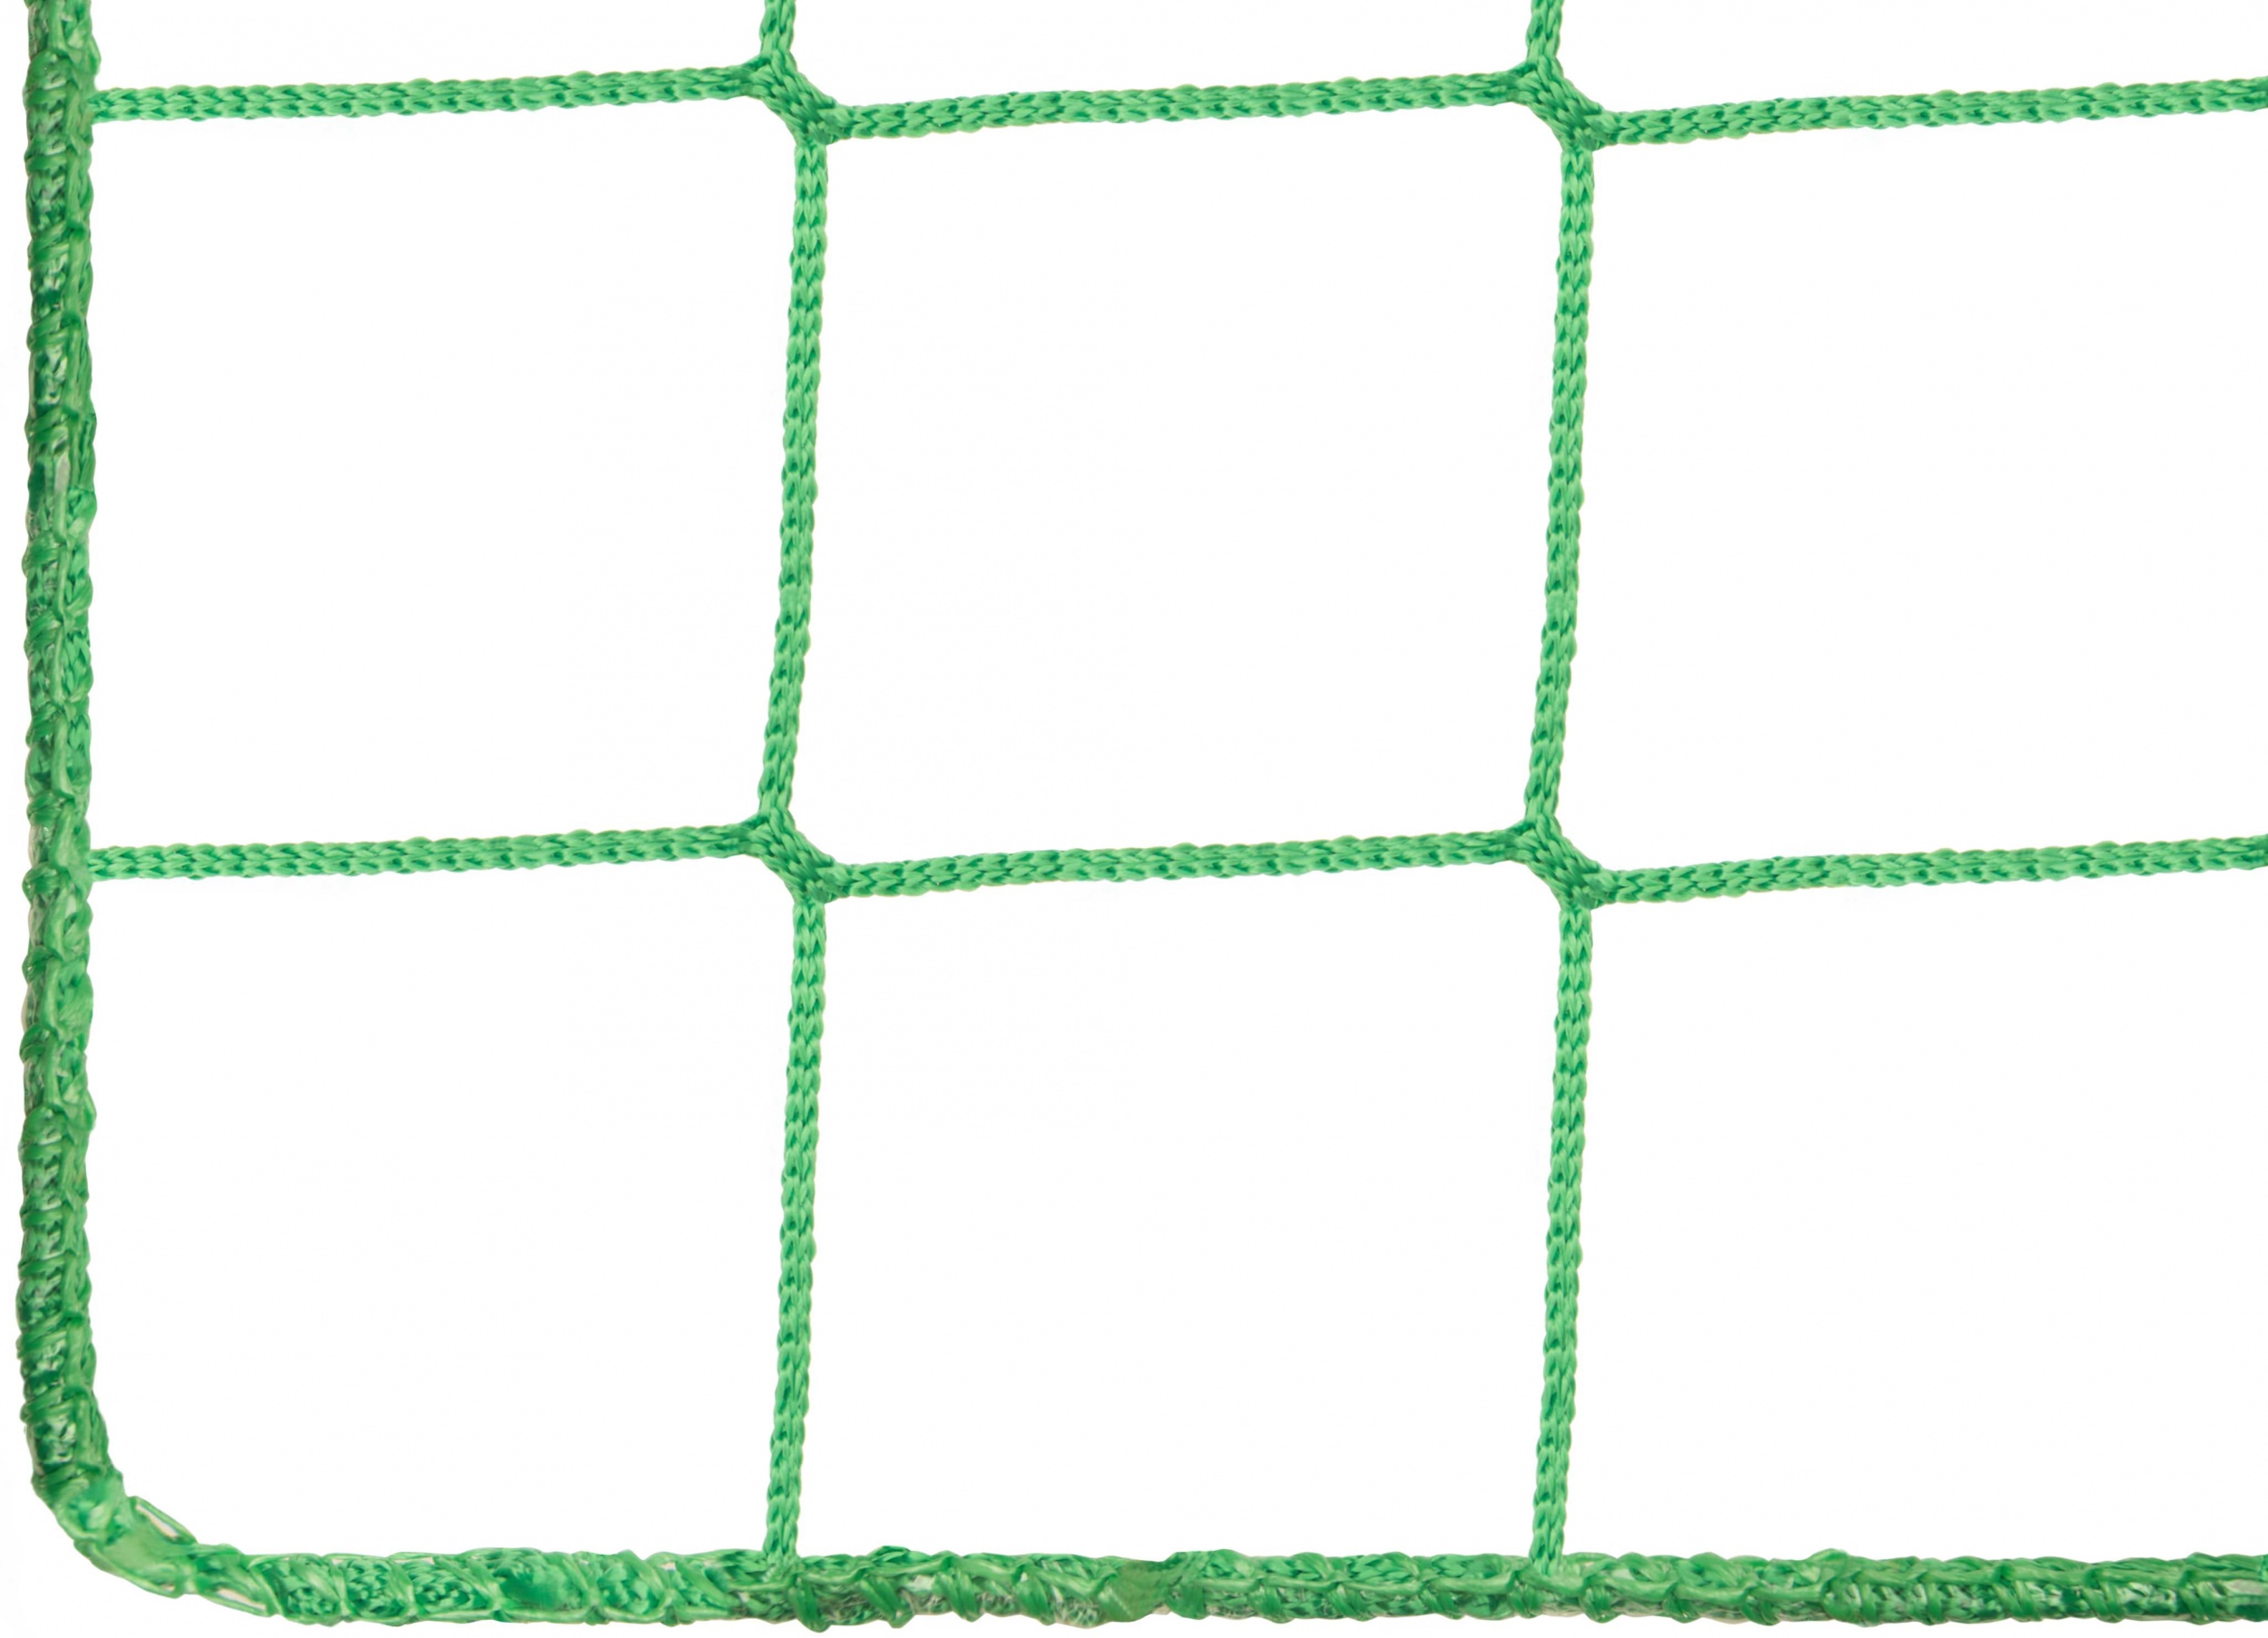 Ballfangnetz  2,00 m x 10 m  oliv  Maschenweite 5 cm  Ballnetz Fangnetz 